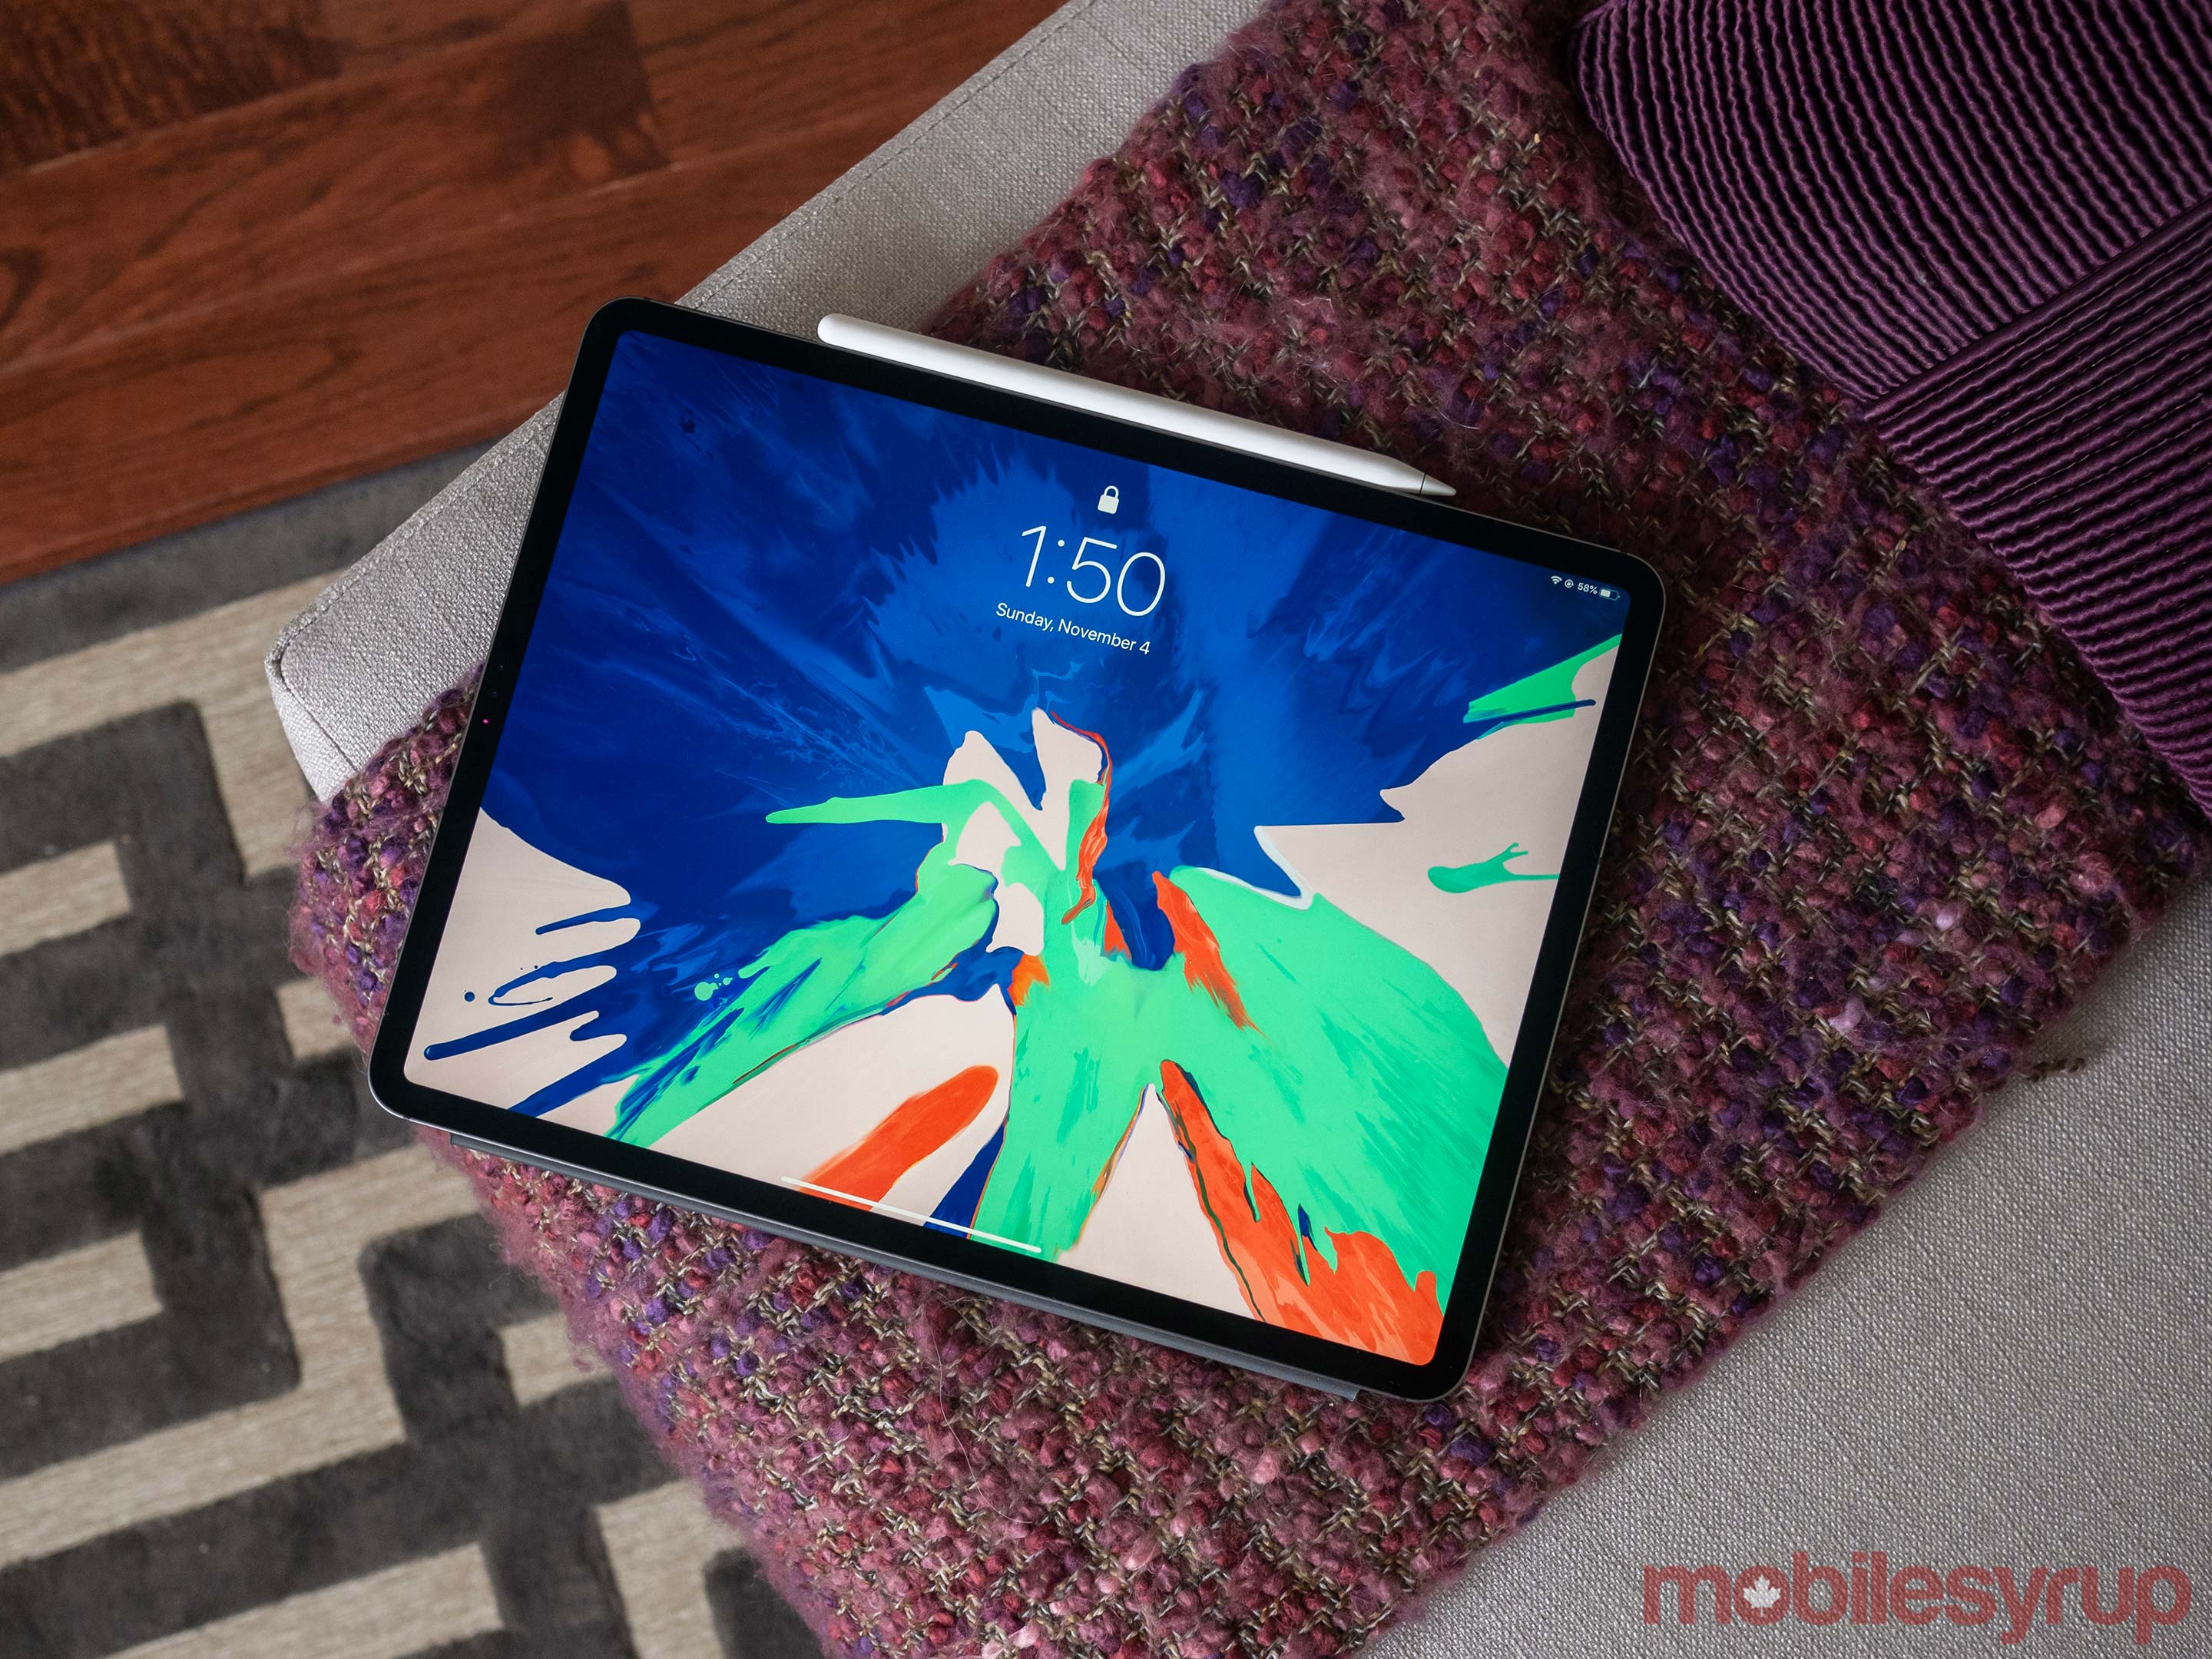 iPad Pro 2018 display